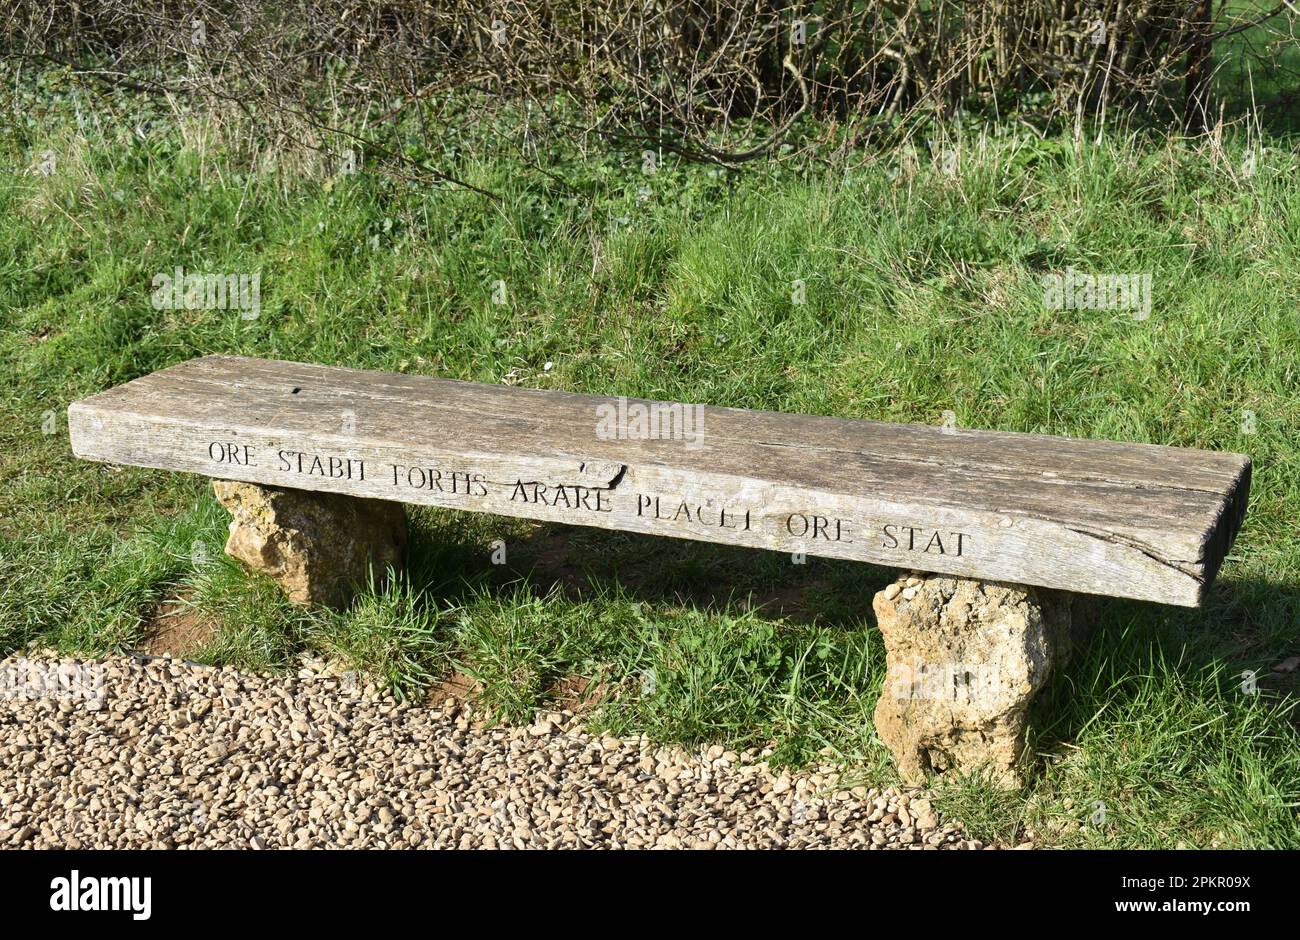 Un banc en bois avec l'inscription: 'Ore stabit fortis arare platet ore stat'. Banque D'Images